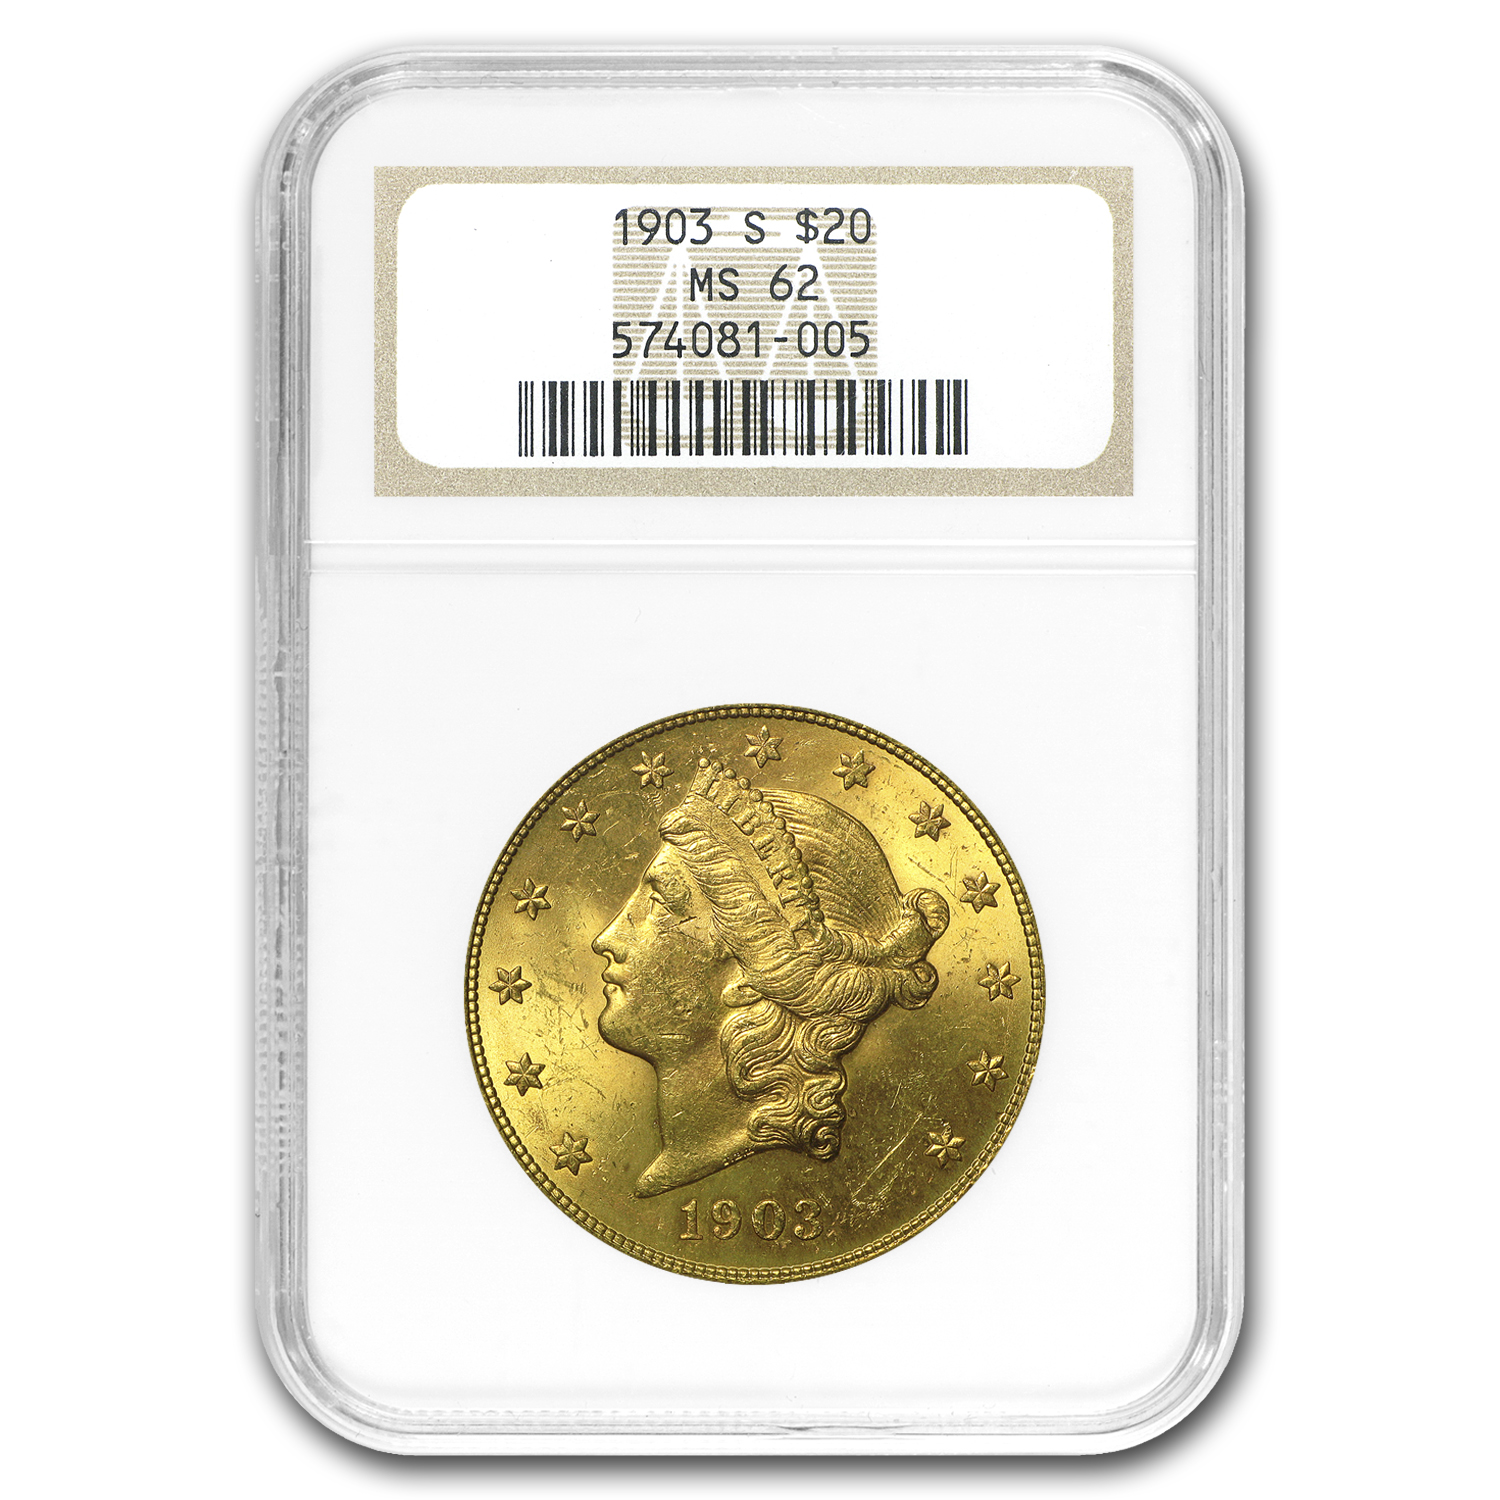 Buy 1903-S $20 Liberty Gold Double Eagle MS-62 NGC